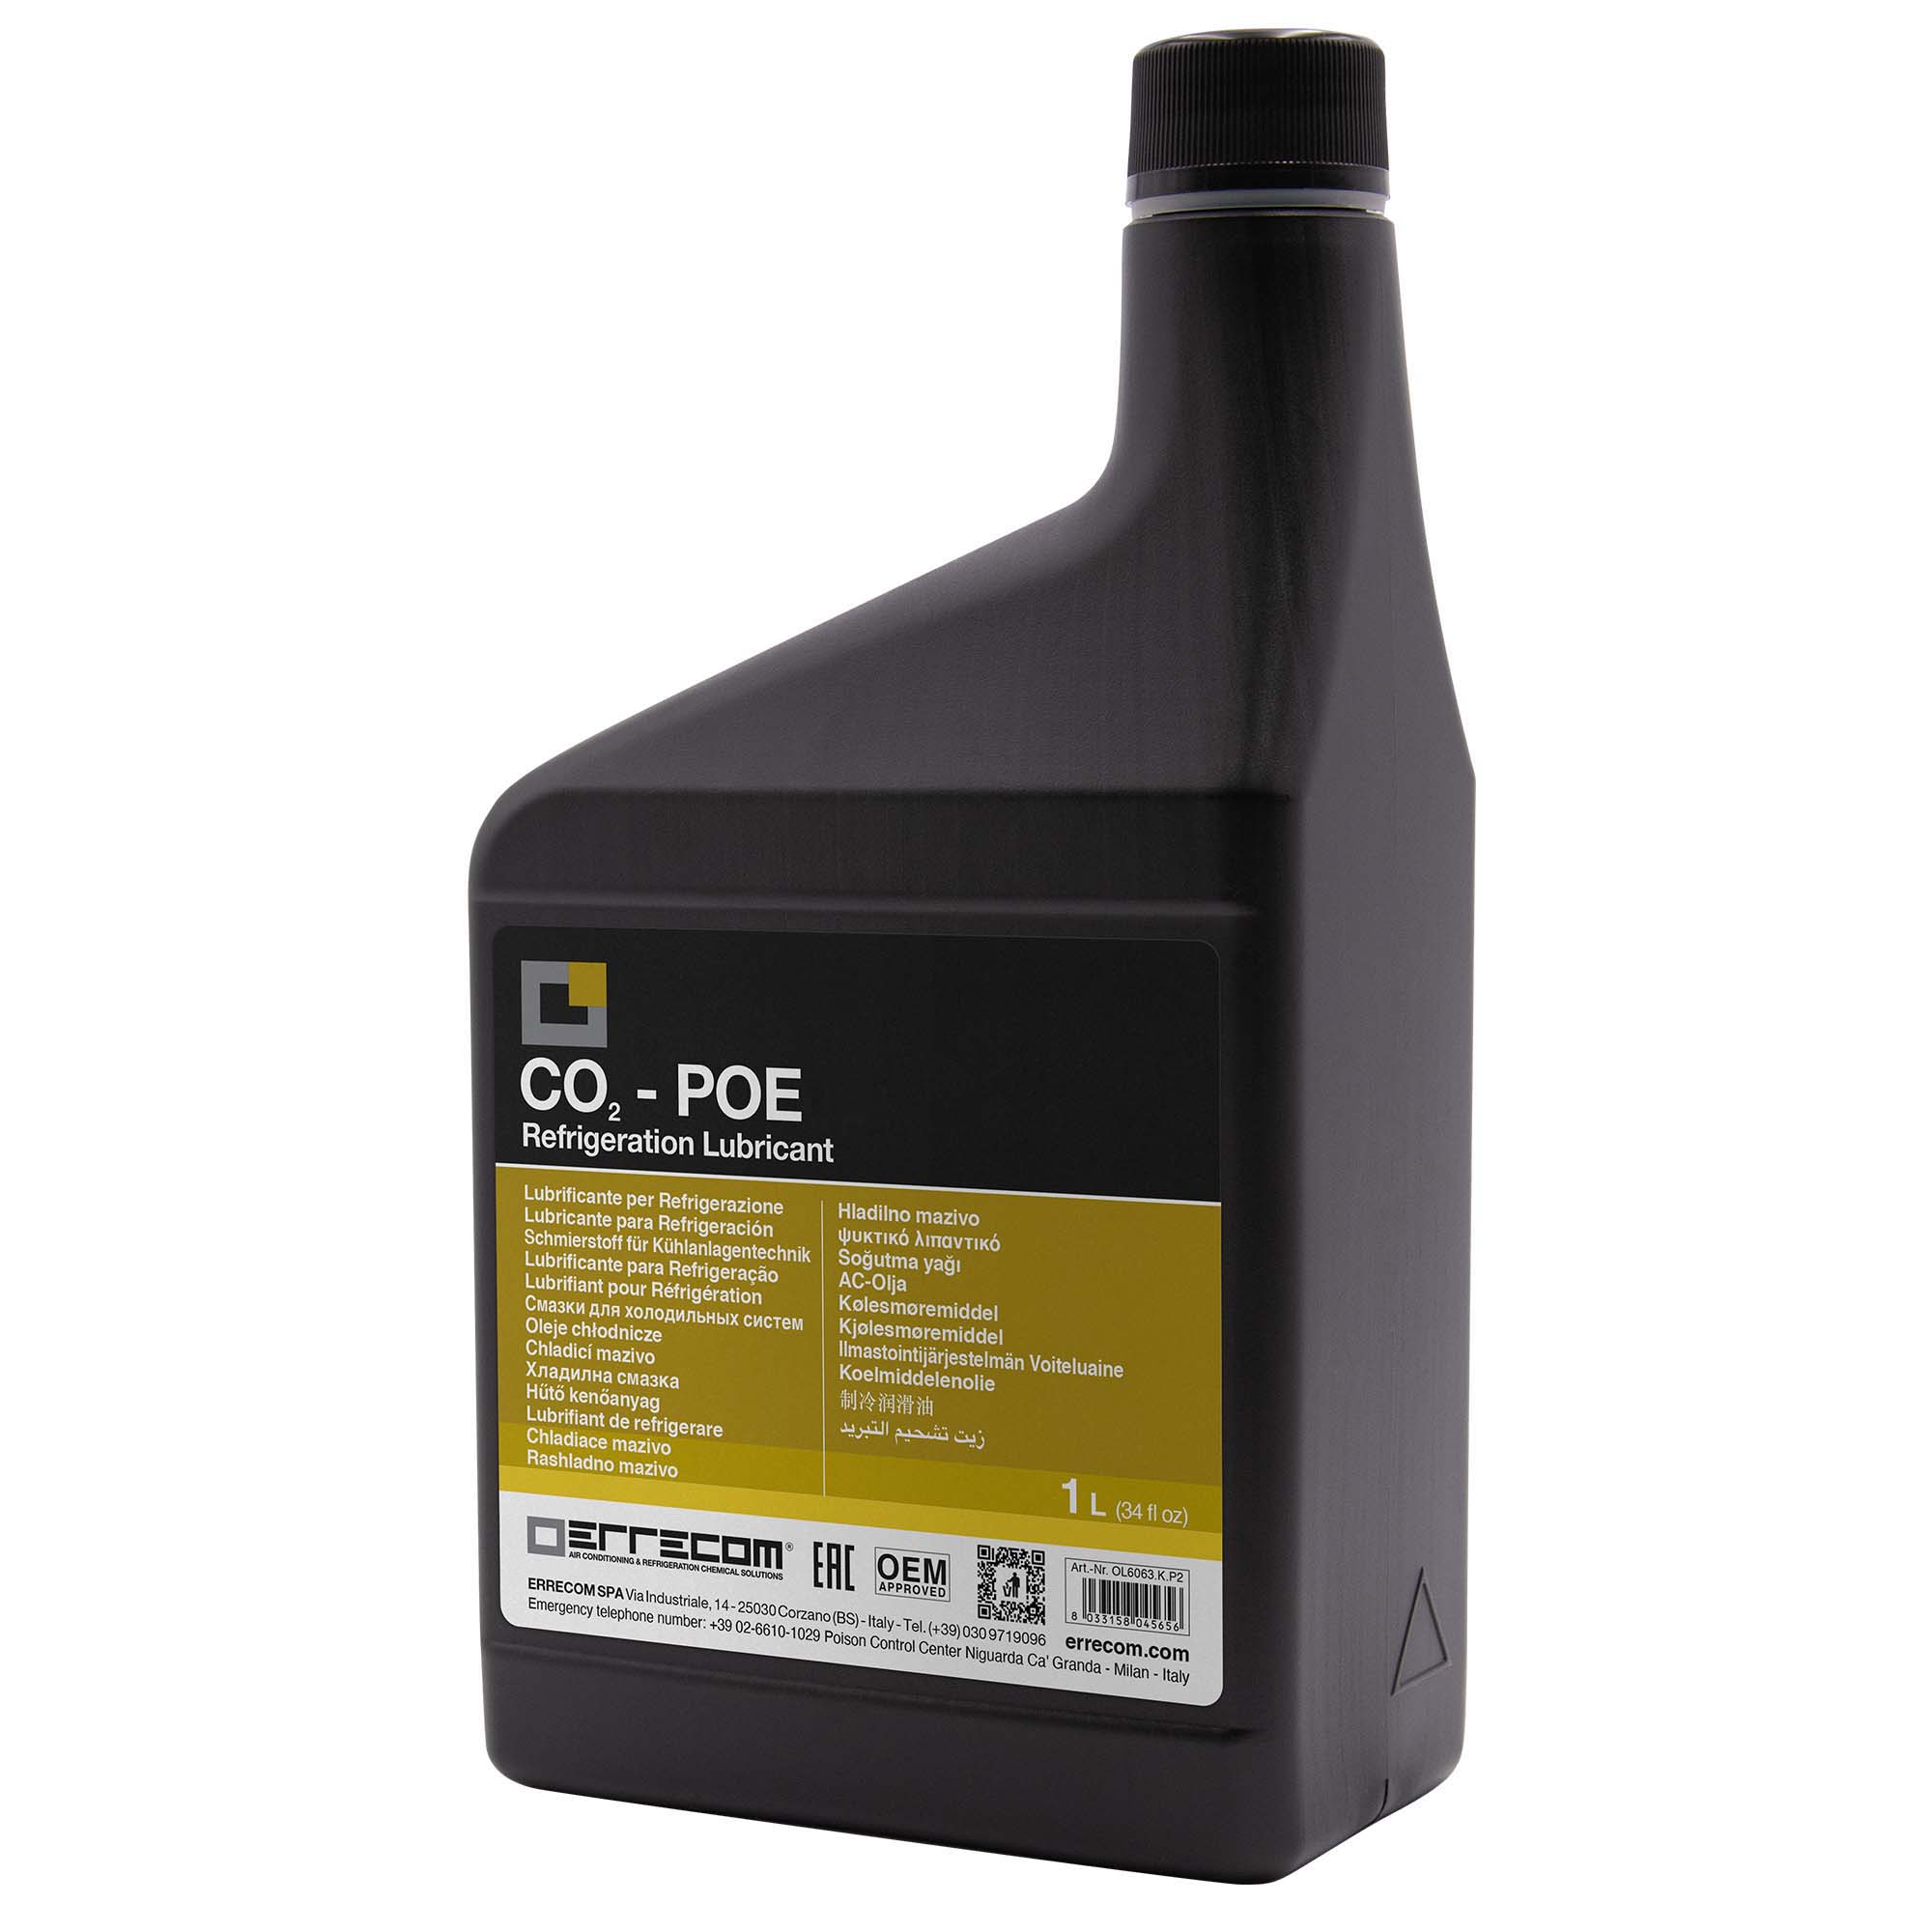 12 x Olio lubrificante Refrigerazione Polyol Estere (POE) specifico per CO2 Errecom 55 - Tanica in Plastica da 1 lt. - Confezione n° 12 pz. (totale 12 litri) - Foto 1 